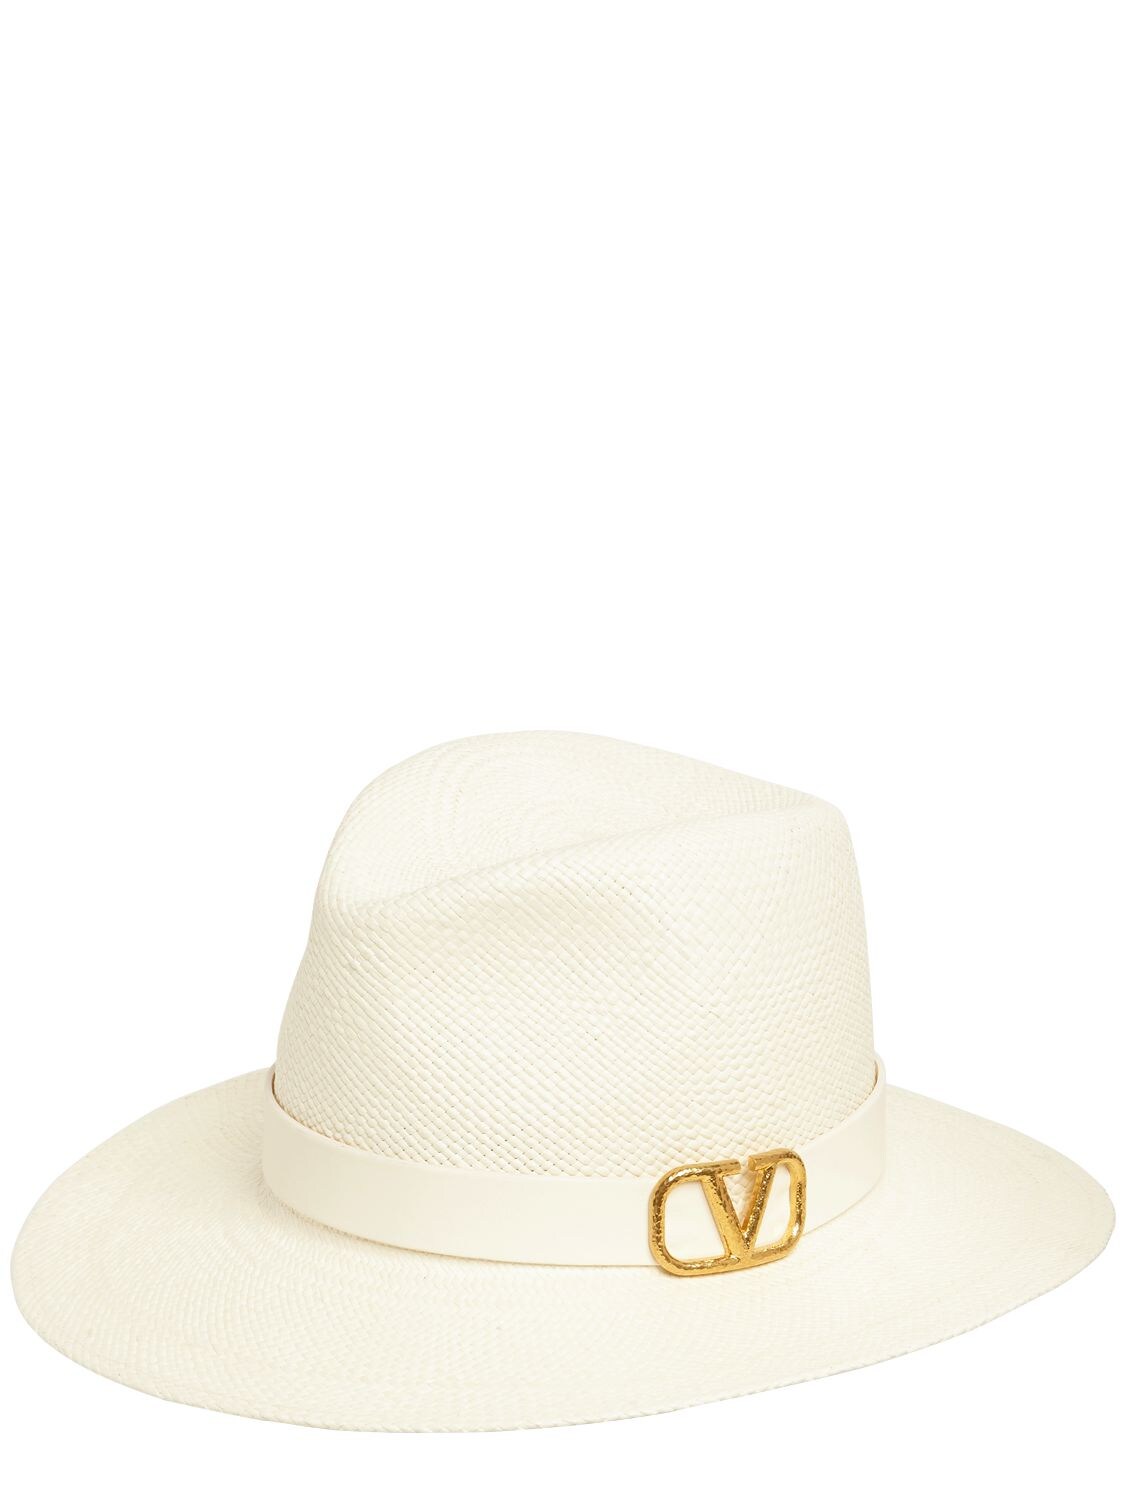 Valentino Garavani Vlogo Straw Hat In Bianco,ivory